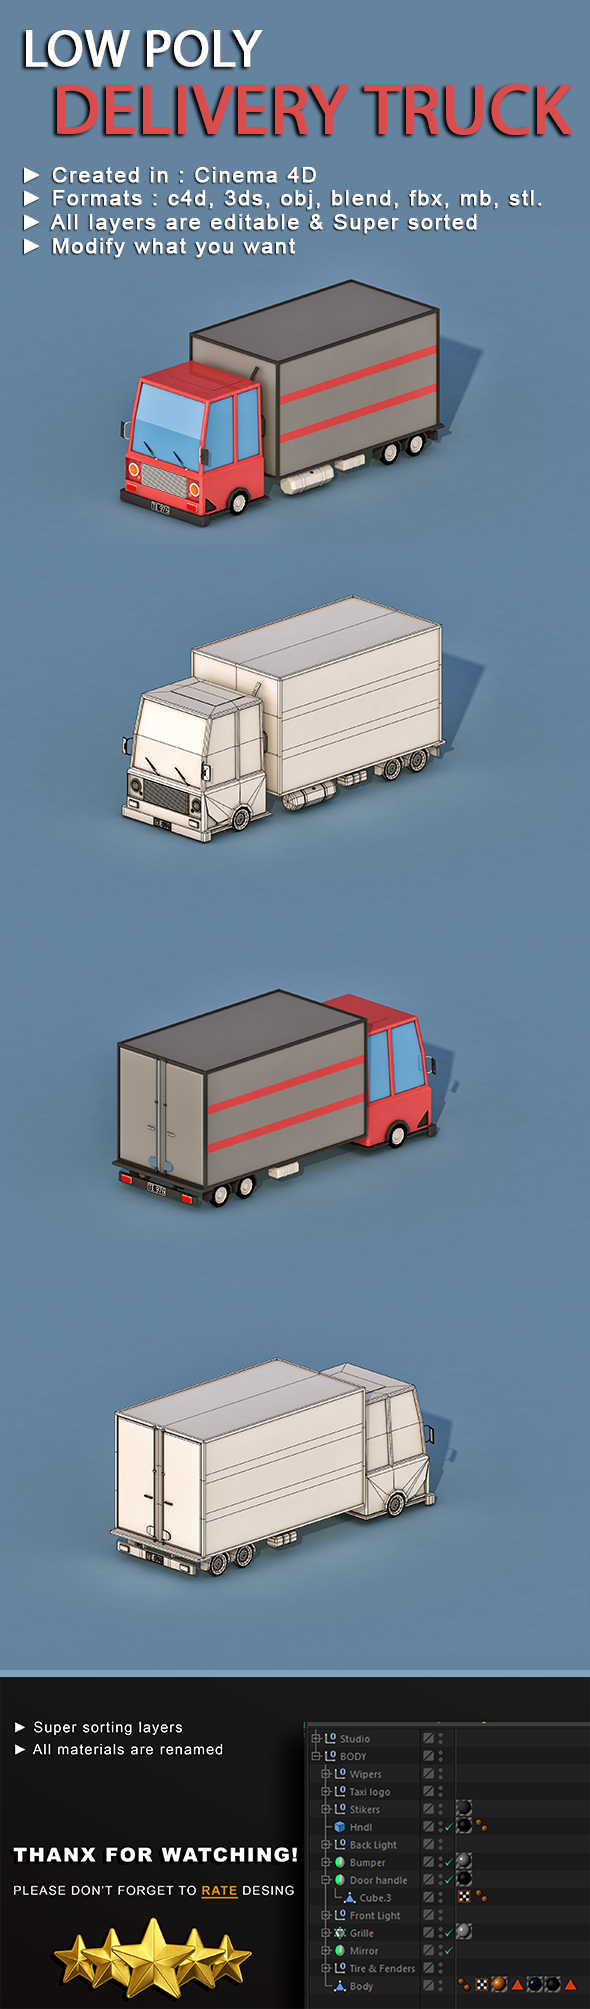 Cartoon Delivery Truck - 3Docean 22935922